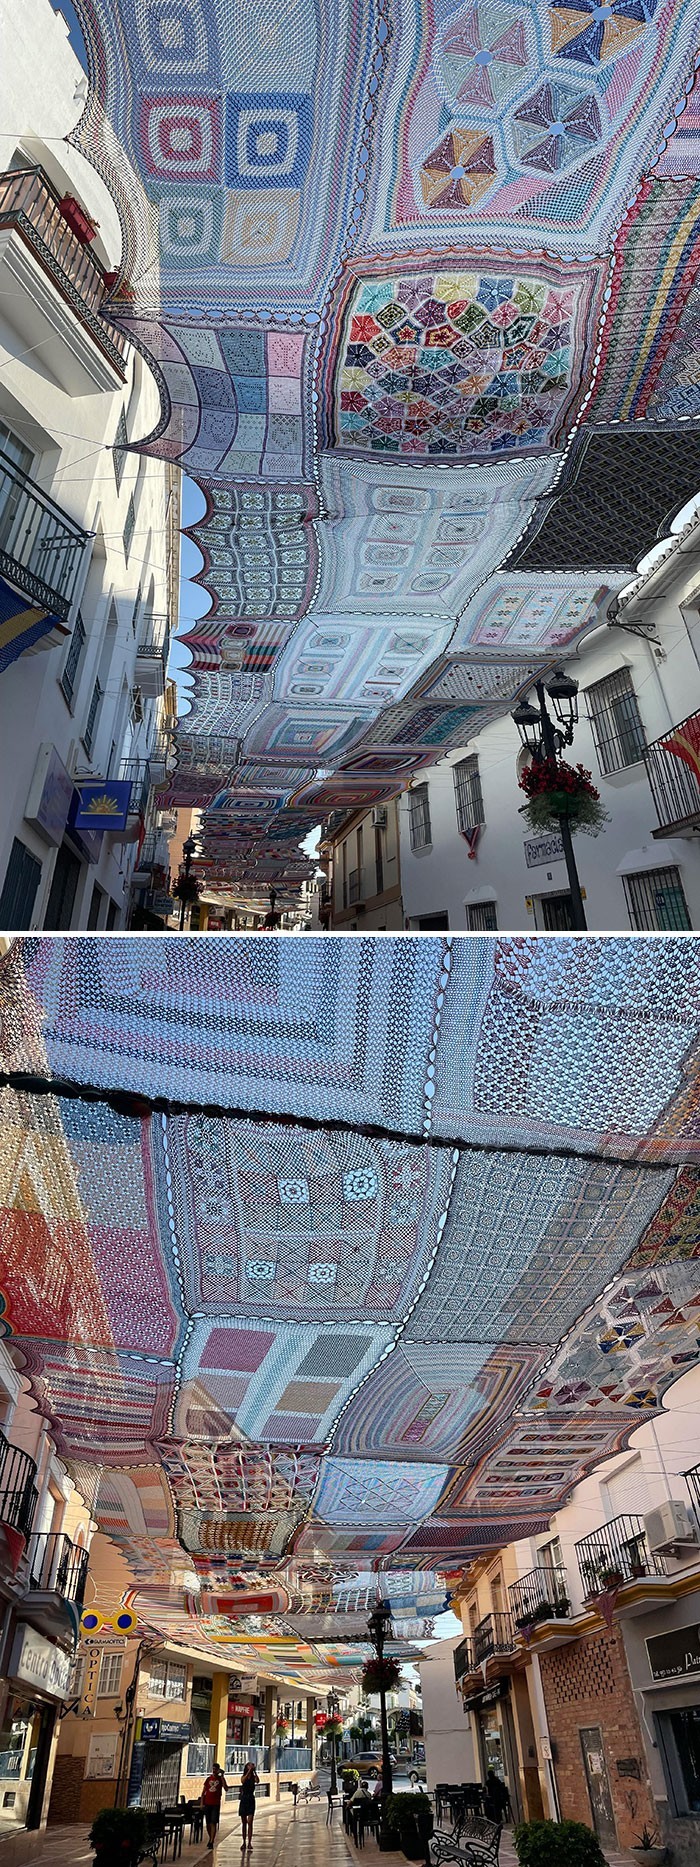 "Kobiety w południowej Hiszpanii tworzą te dywany i rozwieszają je nad ulicą."